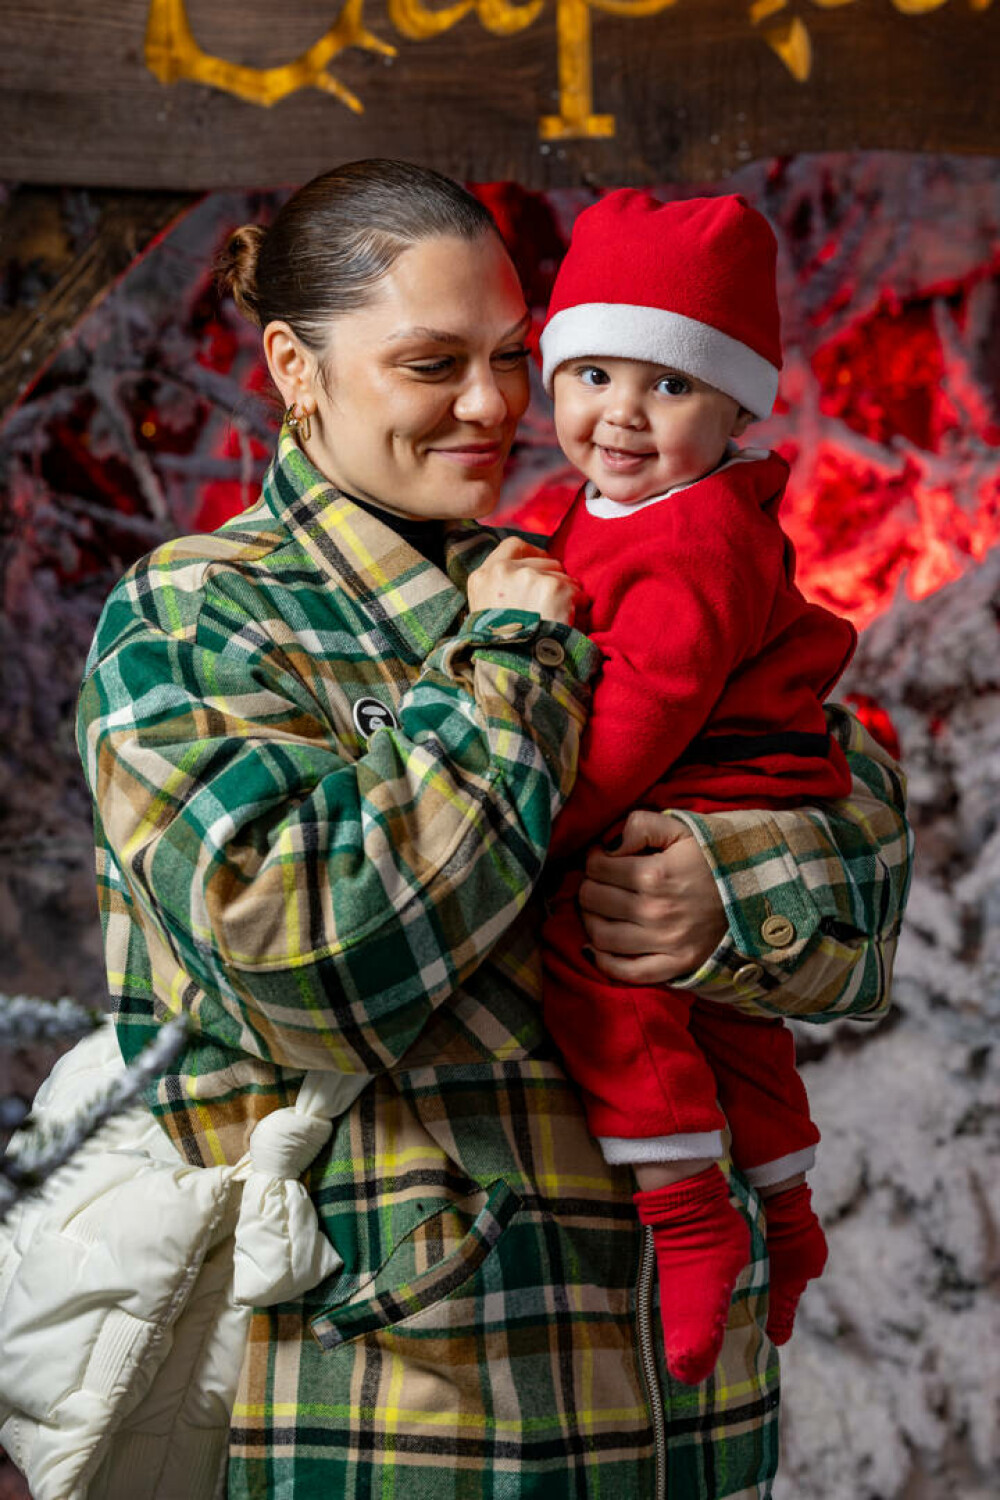 Imagini emoționante cu Jessie J și fiul ei. Cântăreața a fost la casa lui Moș Crăciun alături de familia ei. FOTO - Imaginea 7